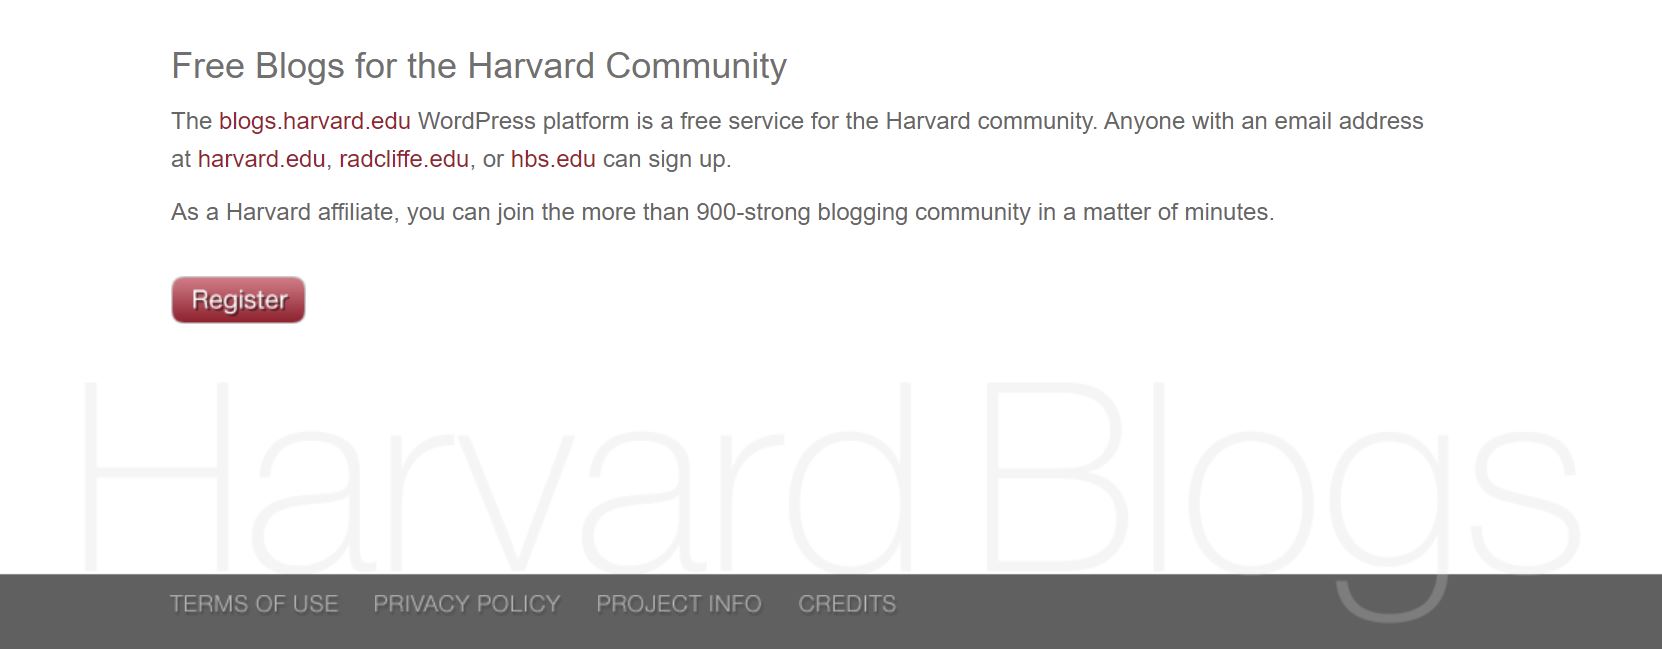 Harvard Blogs multisite example